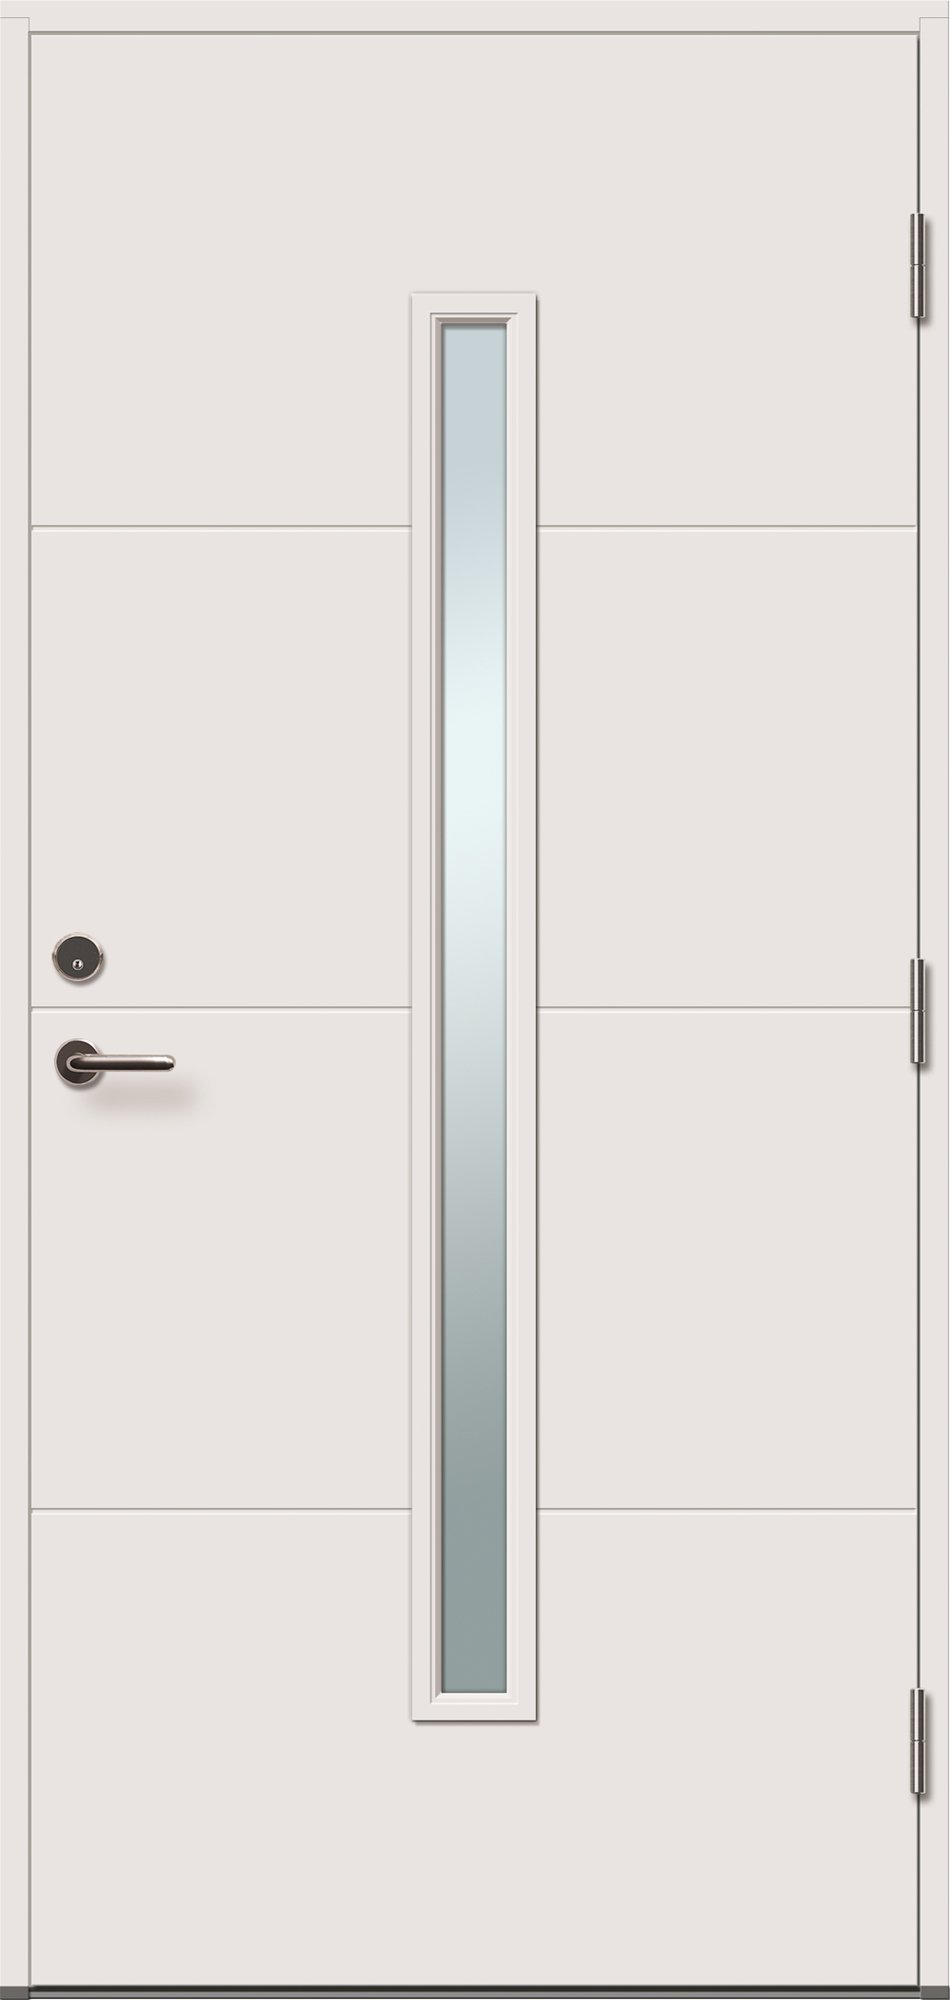 Lauko durys VILJANDI STORO 1R, balta sp., 990 x 2088 mm, dešinė